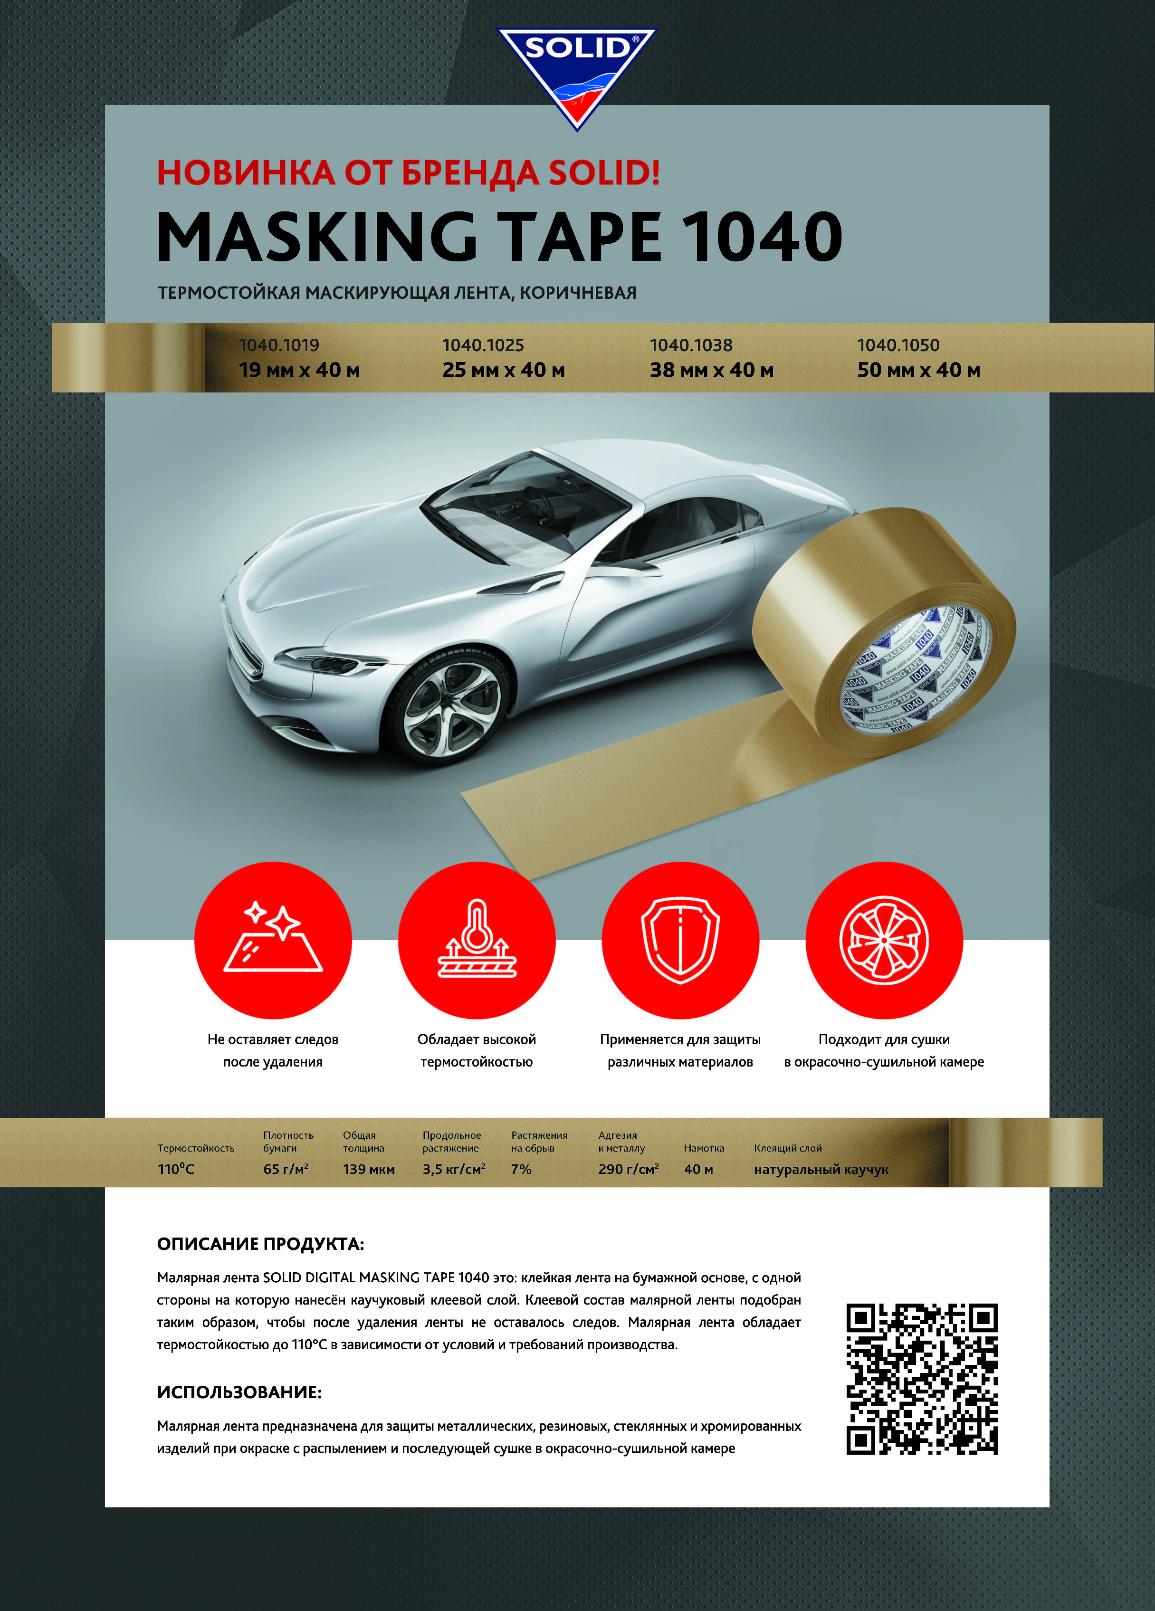 НОВИНКА!!! Solid Digital маскирующие ленты SOLID 1040 - 40 м (110⁰С) уже в продаже!